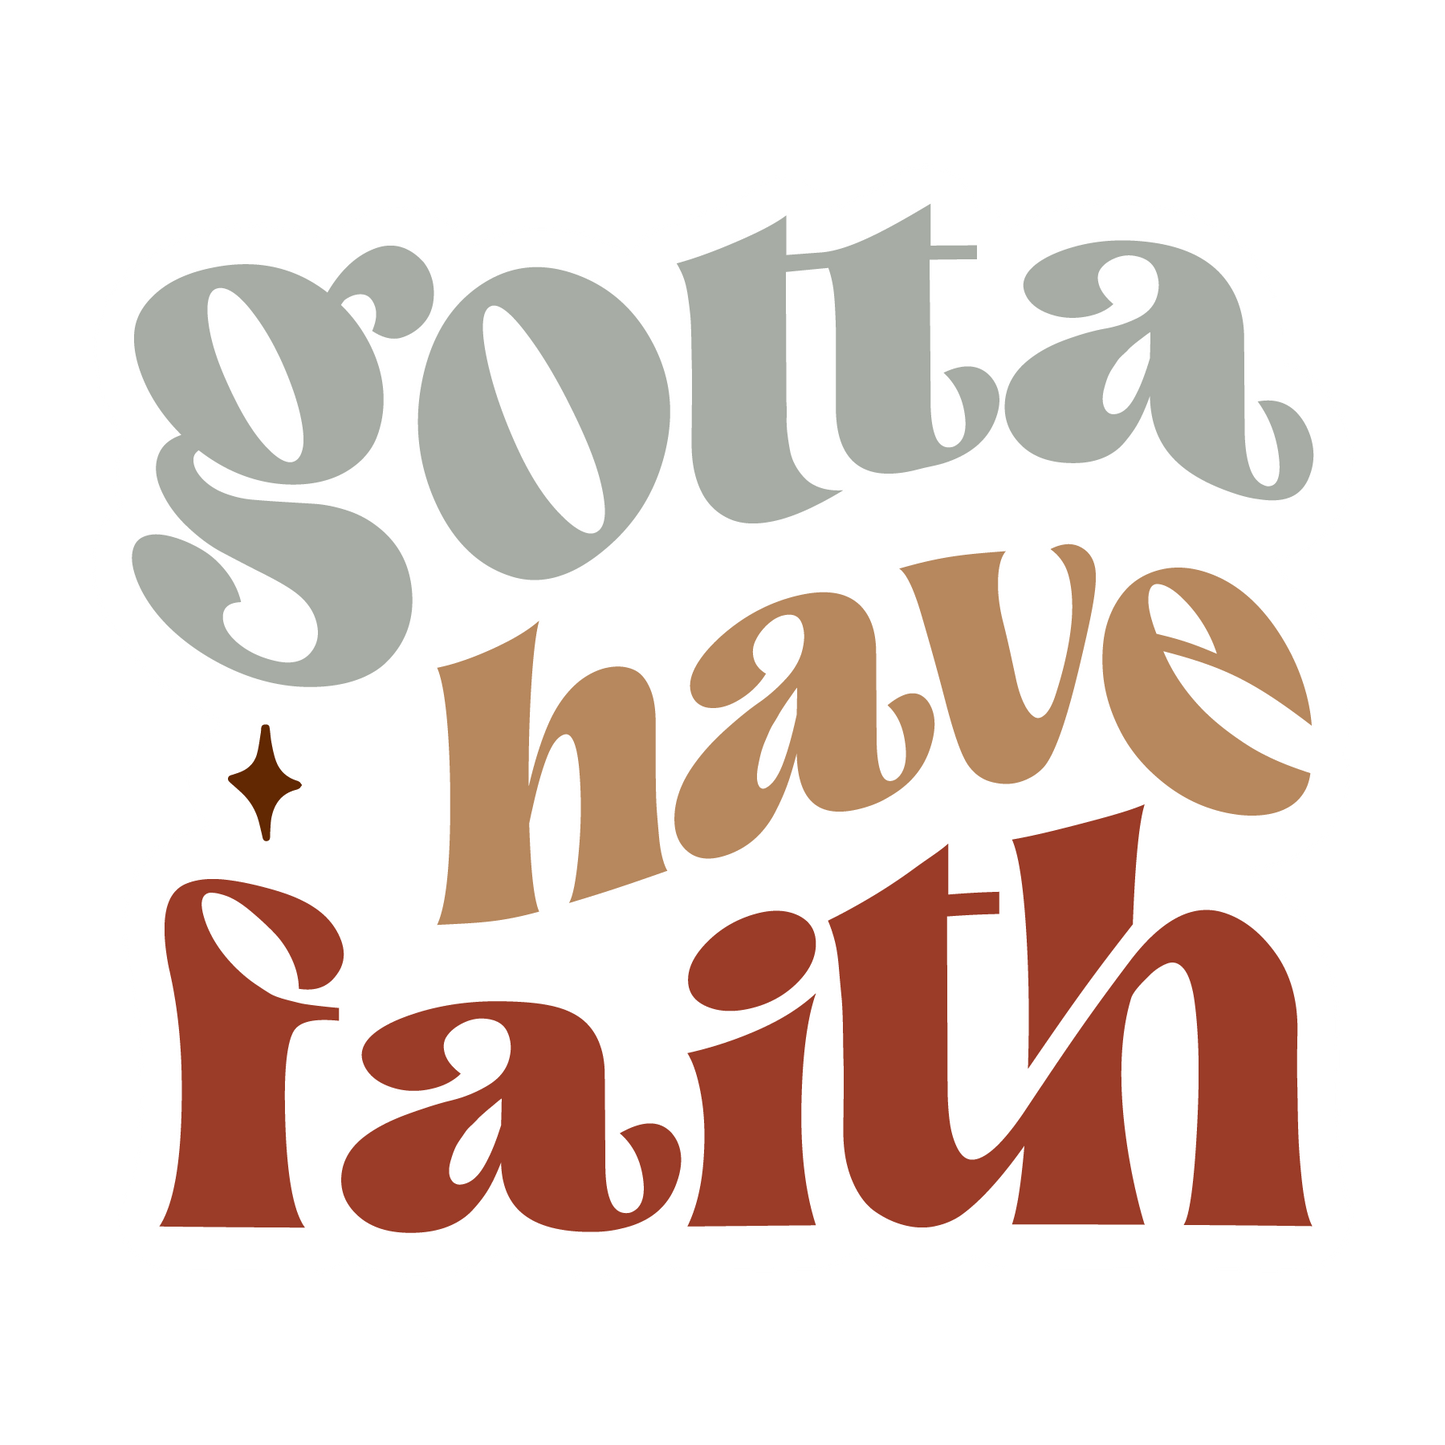 Inspirational Quote "Gotta Have Faith, Sticker Gift" Motivational Sticker Vinyl Decal Motivation Stickers- 5" Vinyl Sticker Waterproof